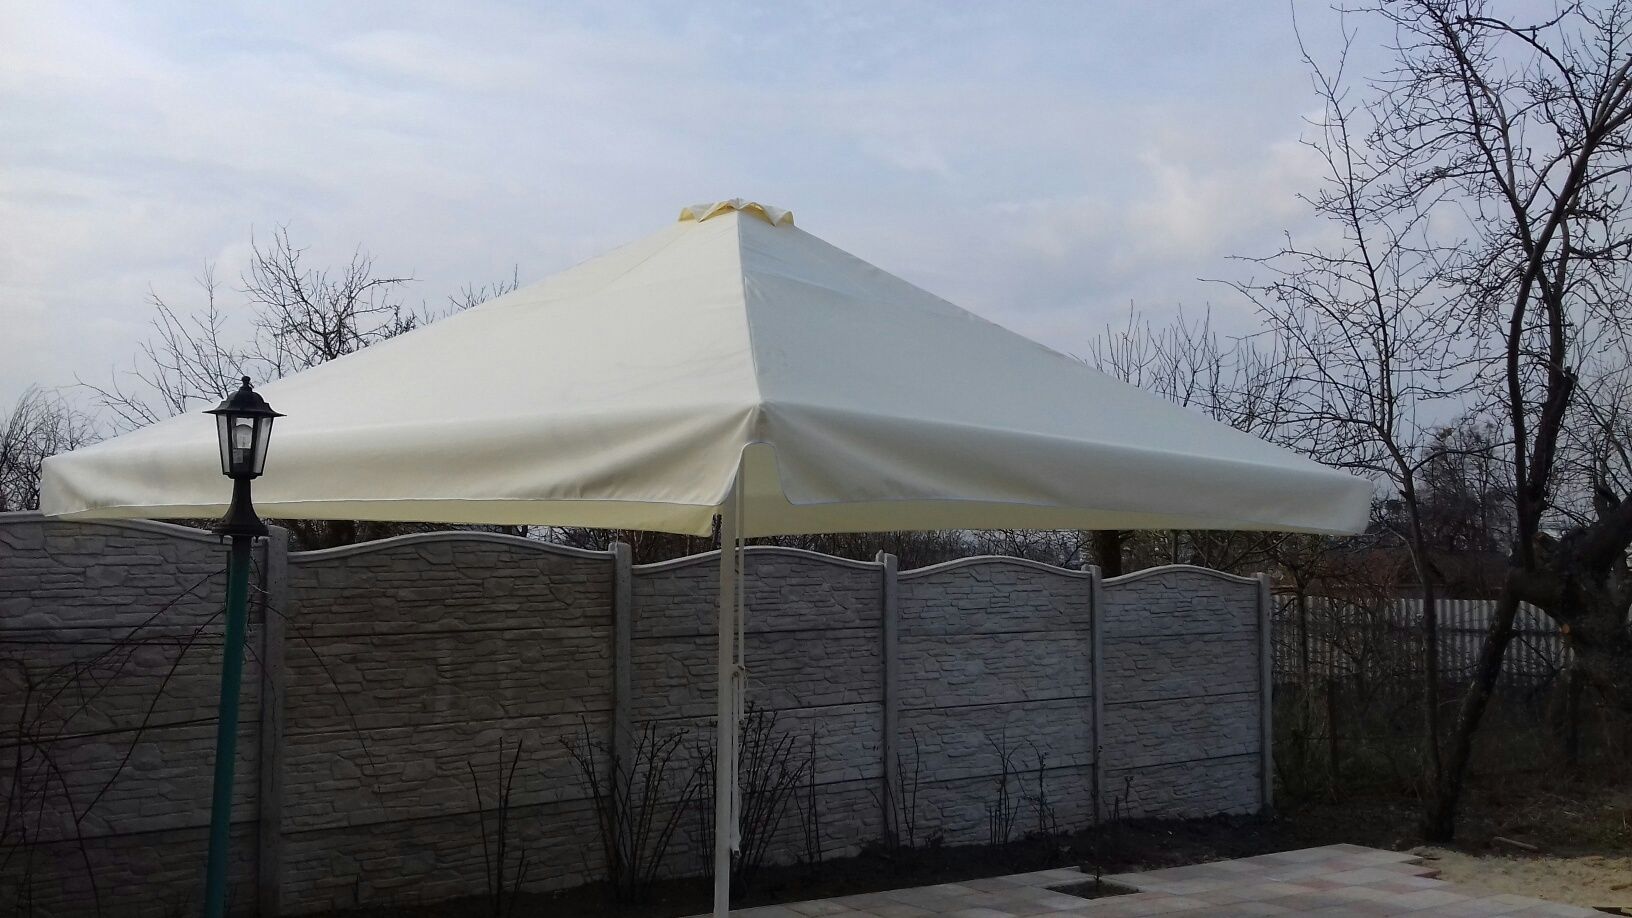 Тент на зонт 4х4 купол, тент на палатку, шатер. Цена тента 3600 гривен